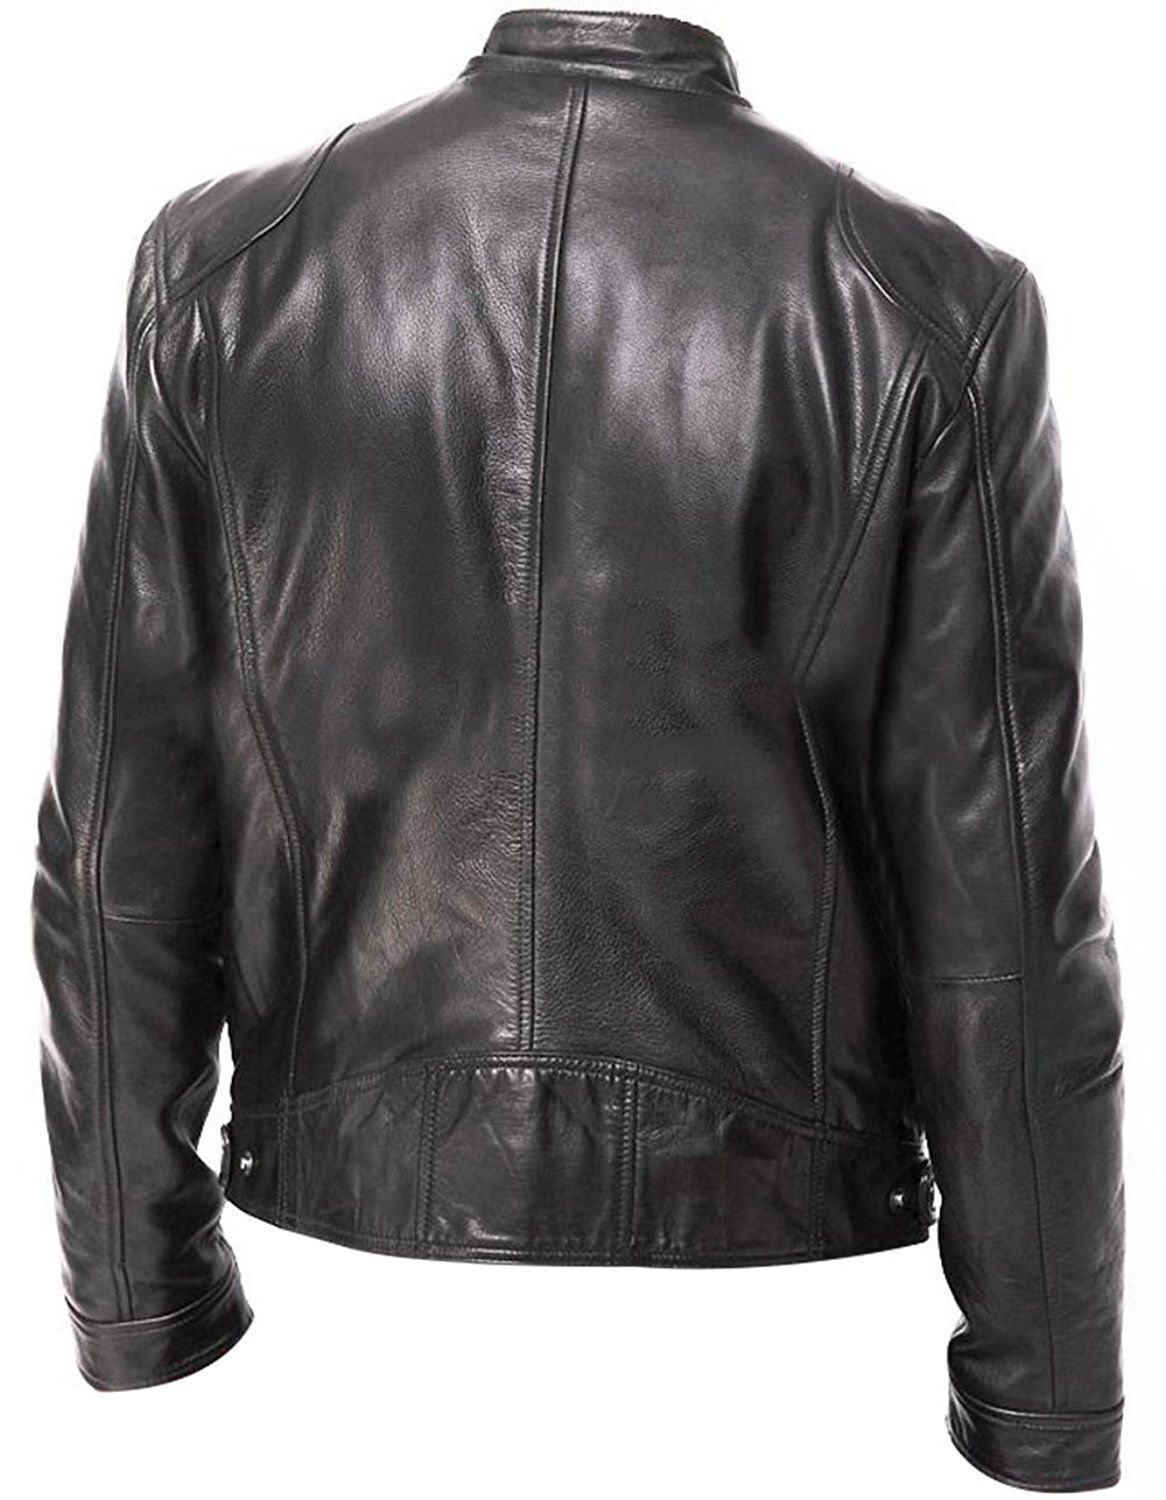 cafe racer leather jacket for men black cafe racer jacket motorcycle leather jacket soft sheepskin leather jacket mens biker leather jackets gift for men